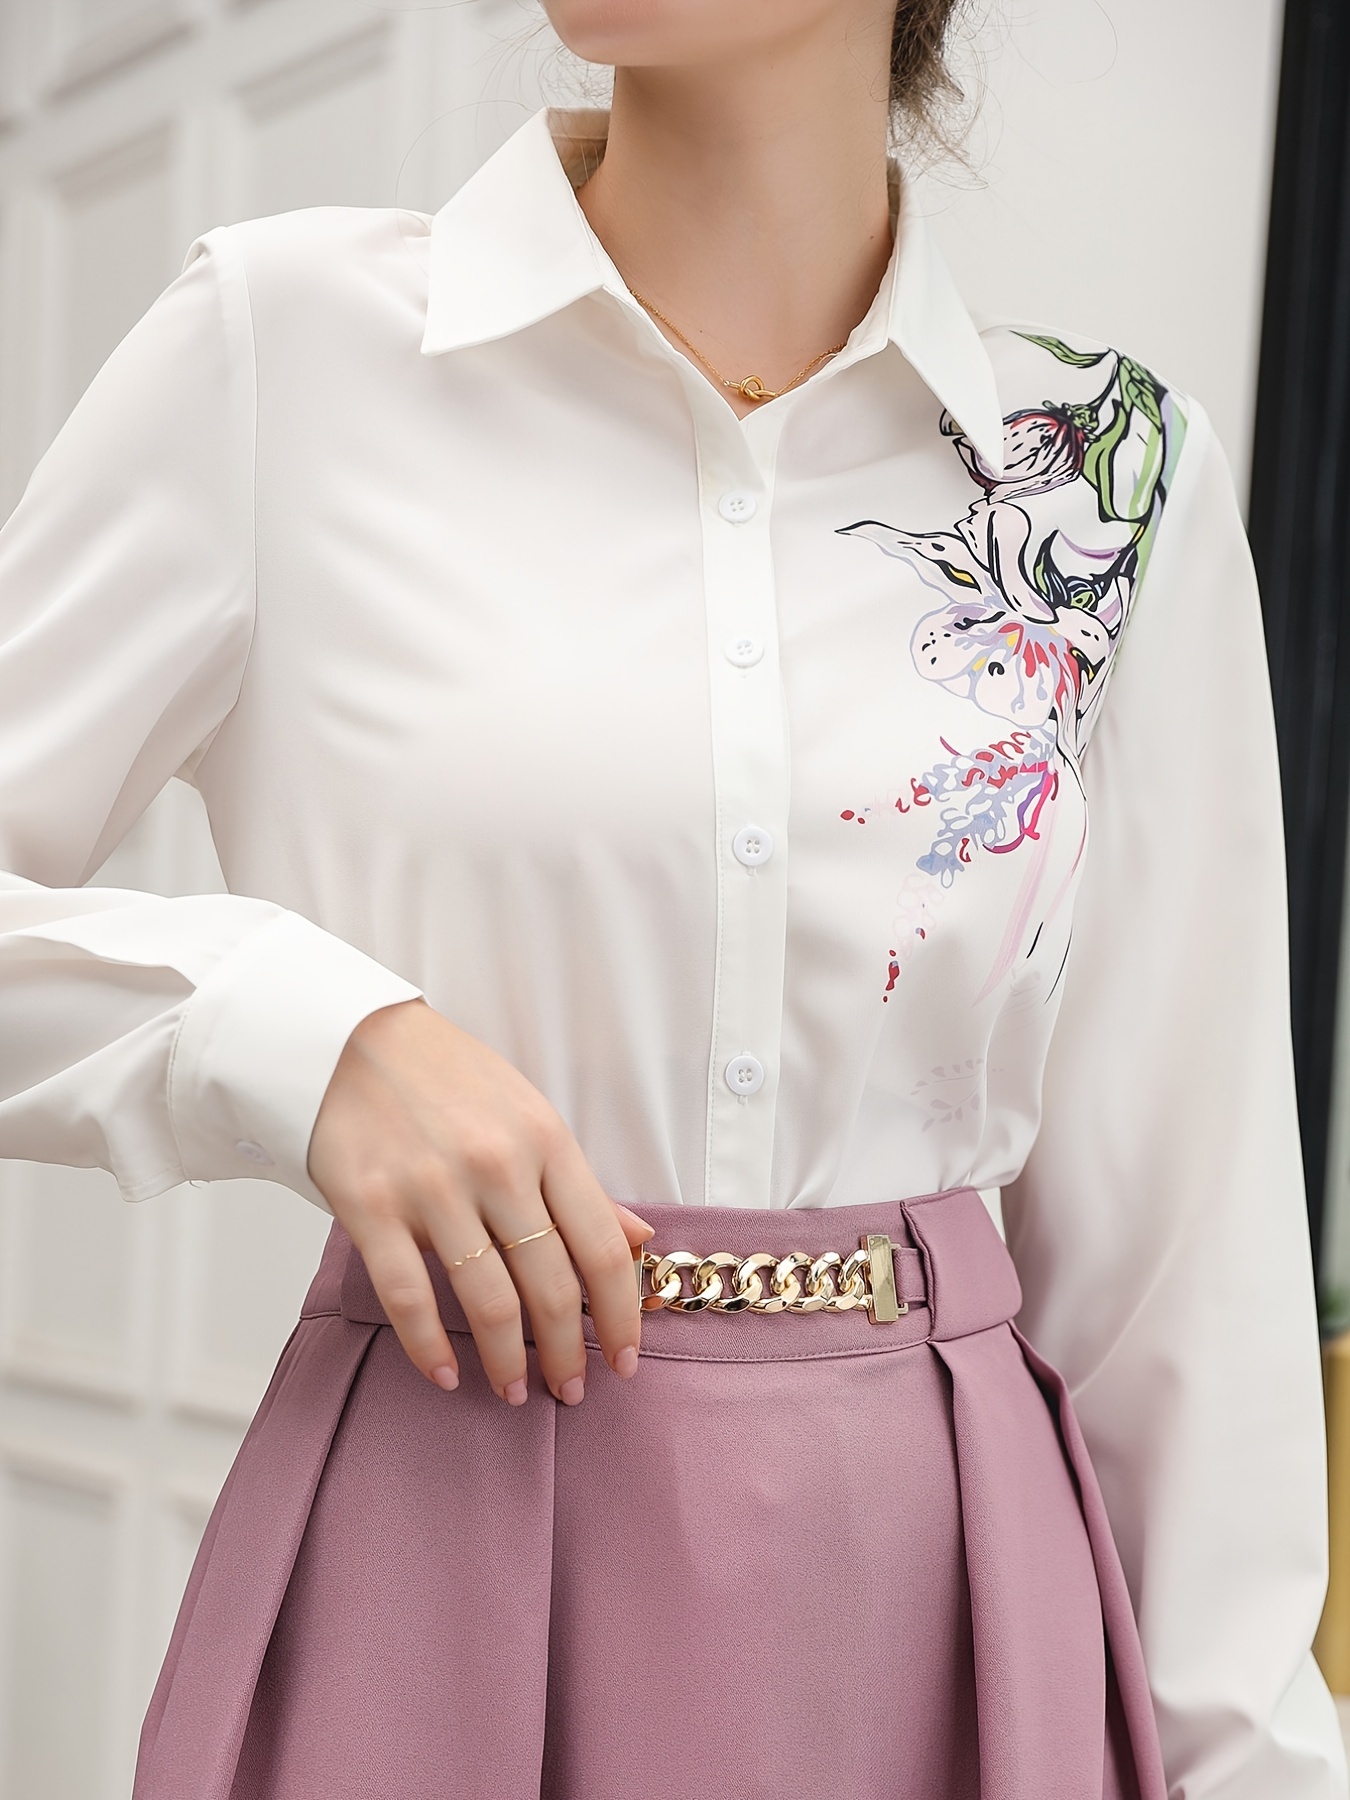 Feminino elegante rendas floral camisas de escritório formal manga